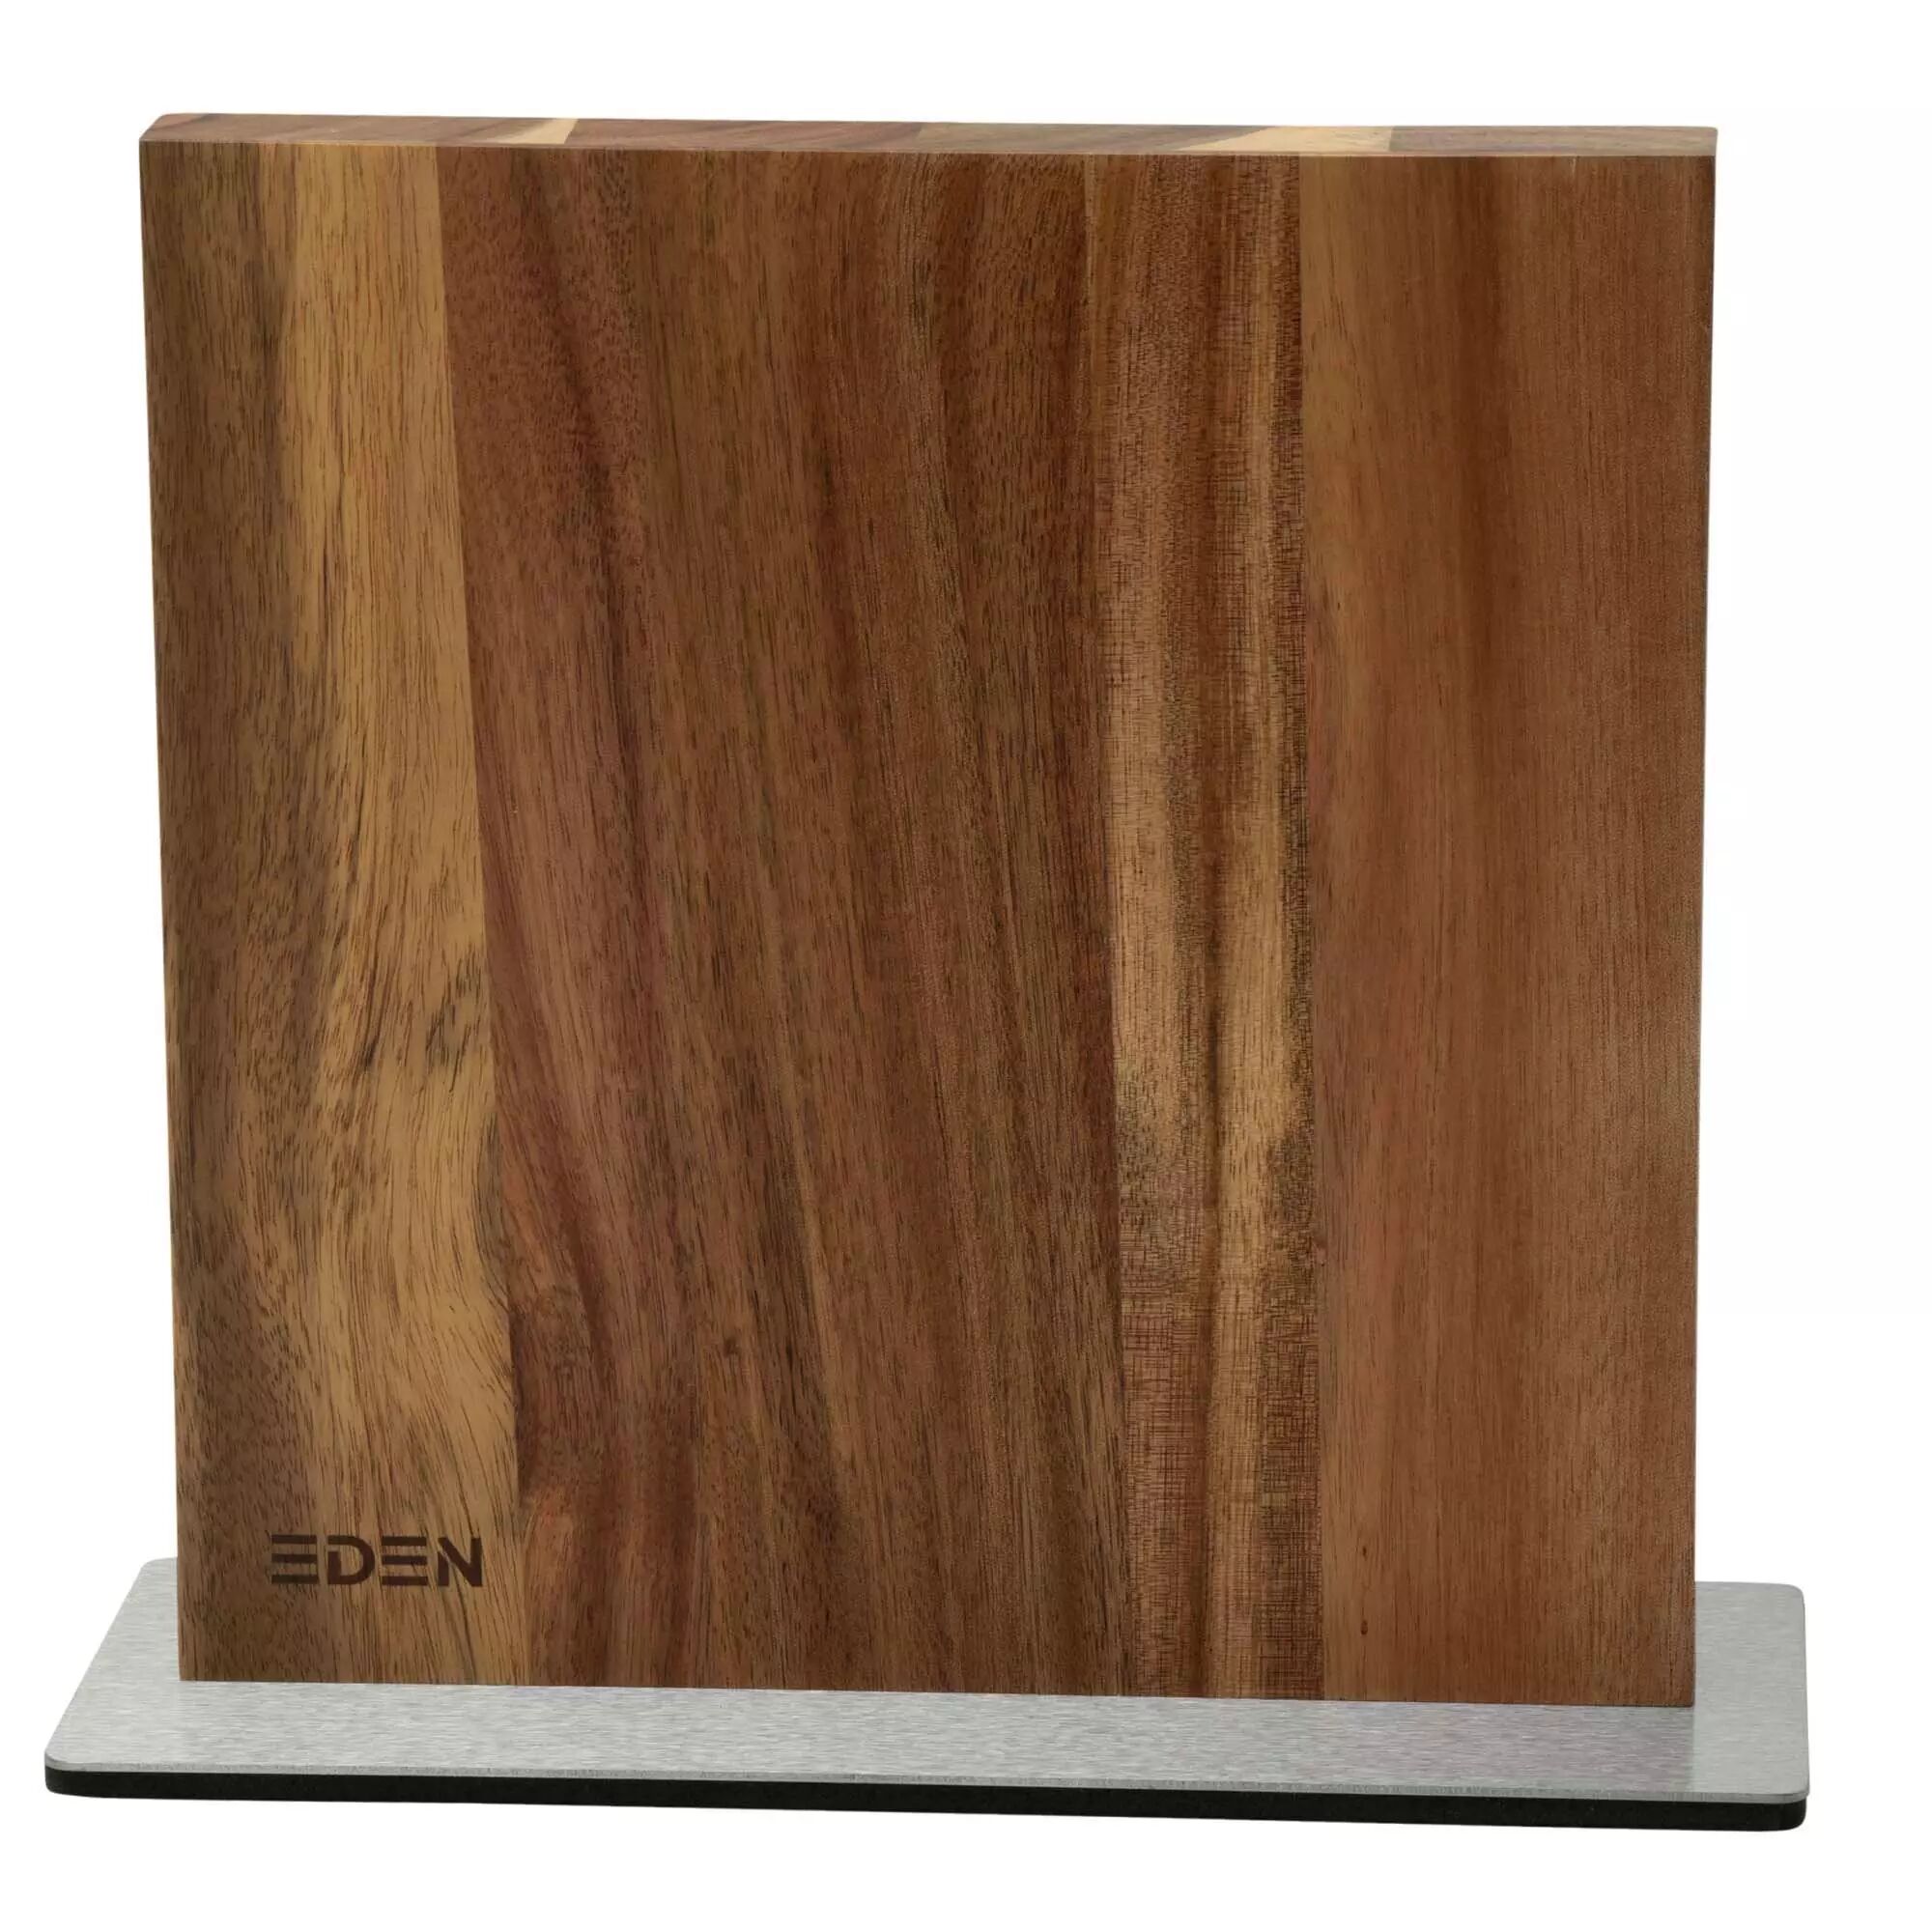 Eden Küchenmesser Eden Magnetic Knife Block EQB101 Akazienholz